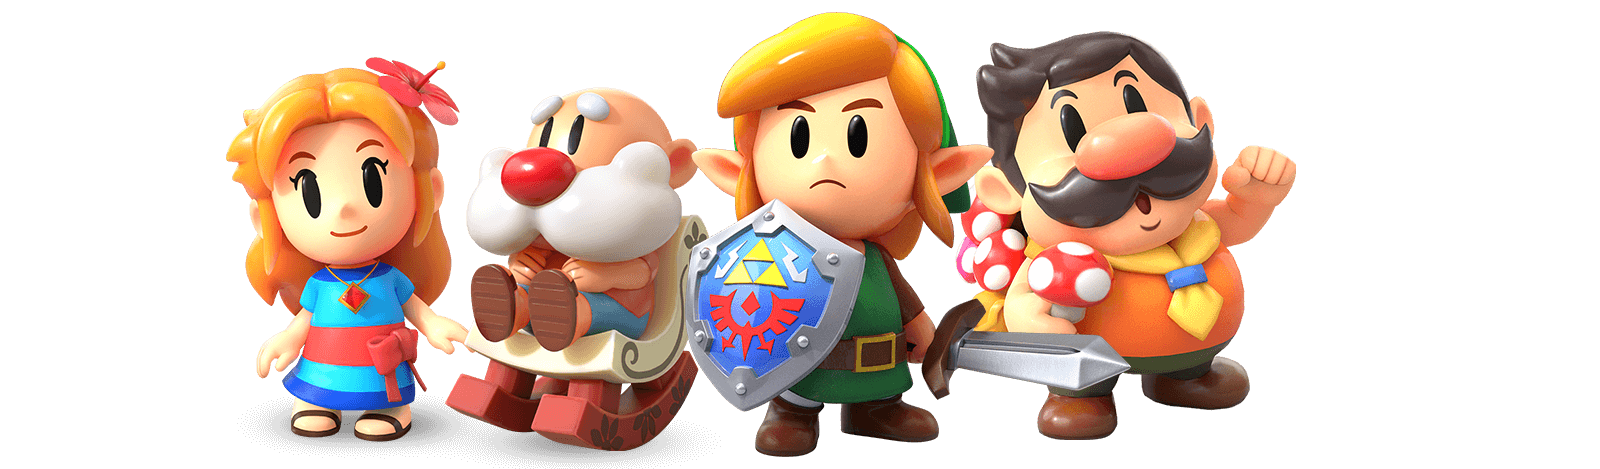 Link's Awakening Karakters